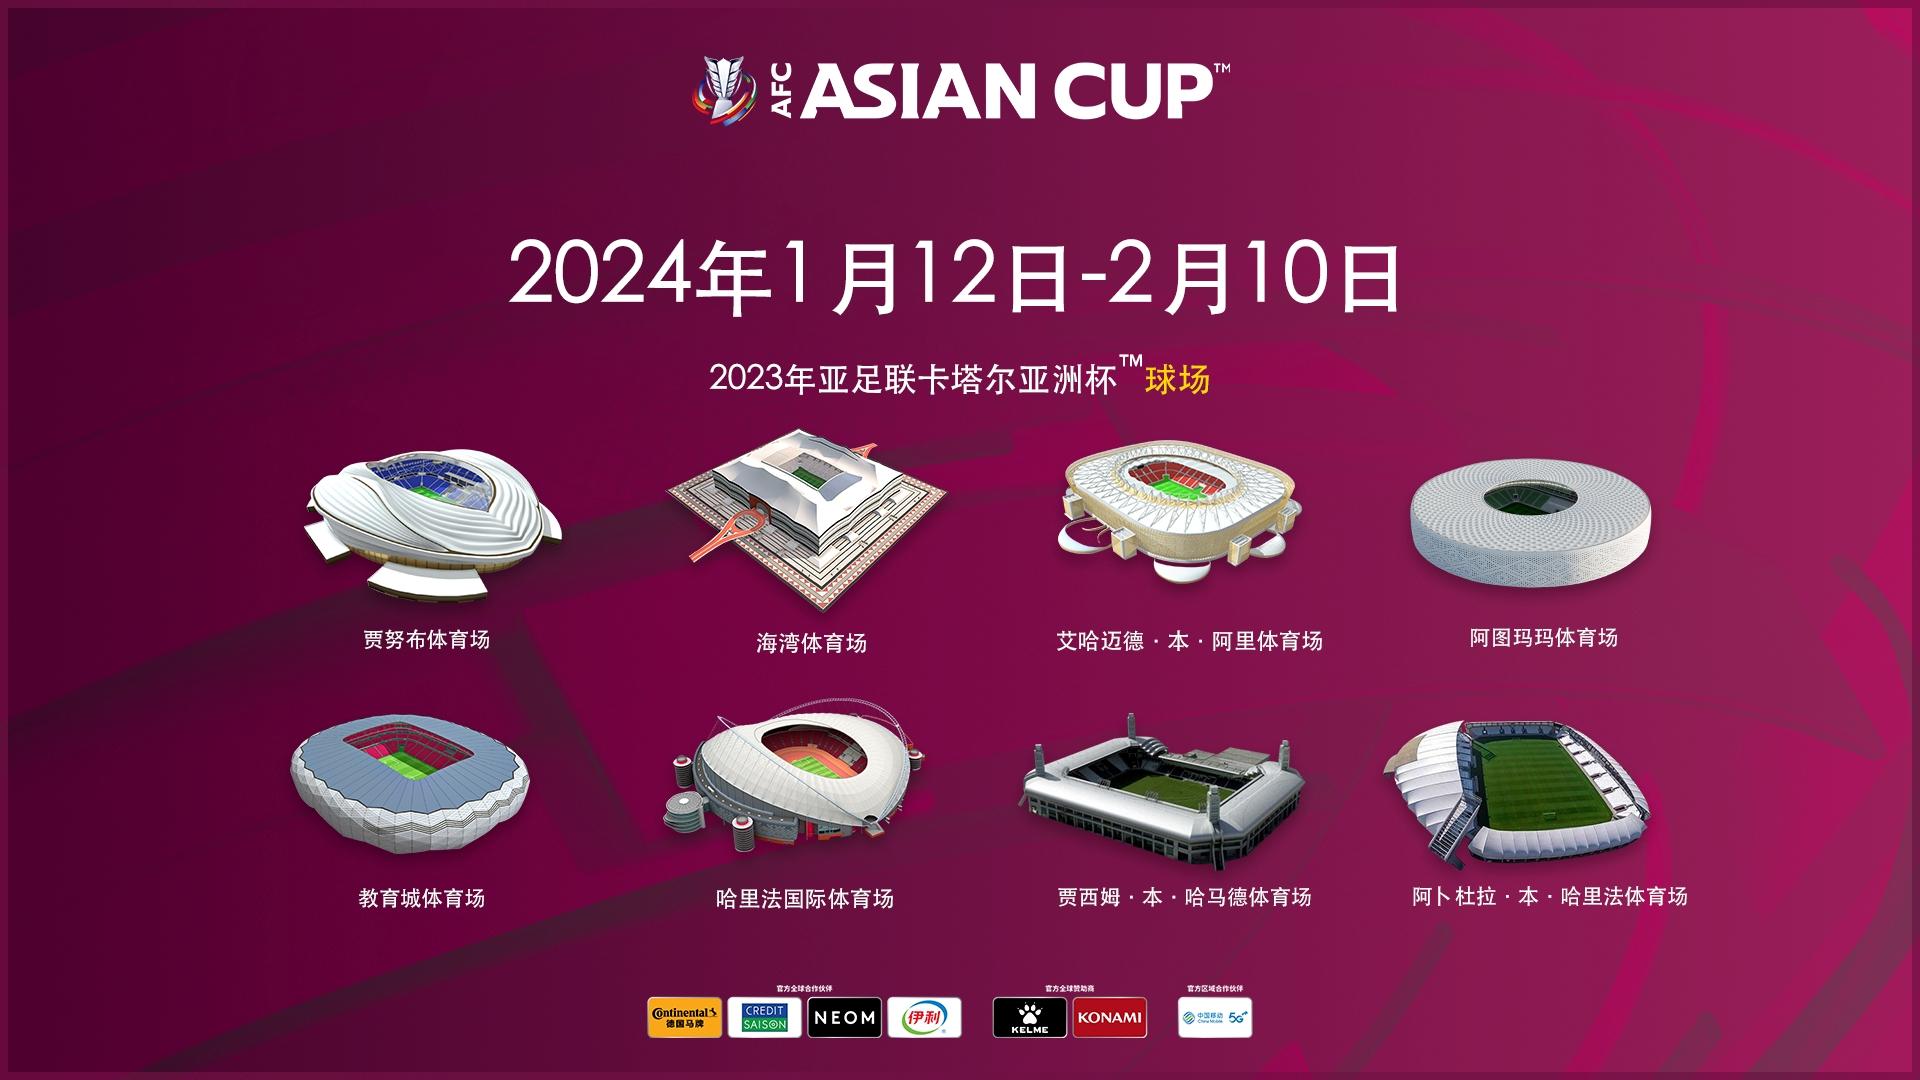 有记者分析2023亚洲杯赛的24支参赛队分档情况大致如下：